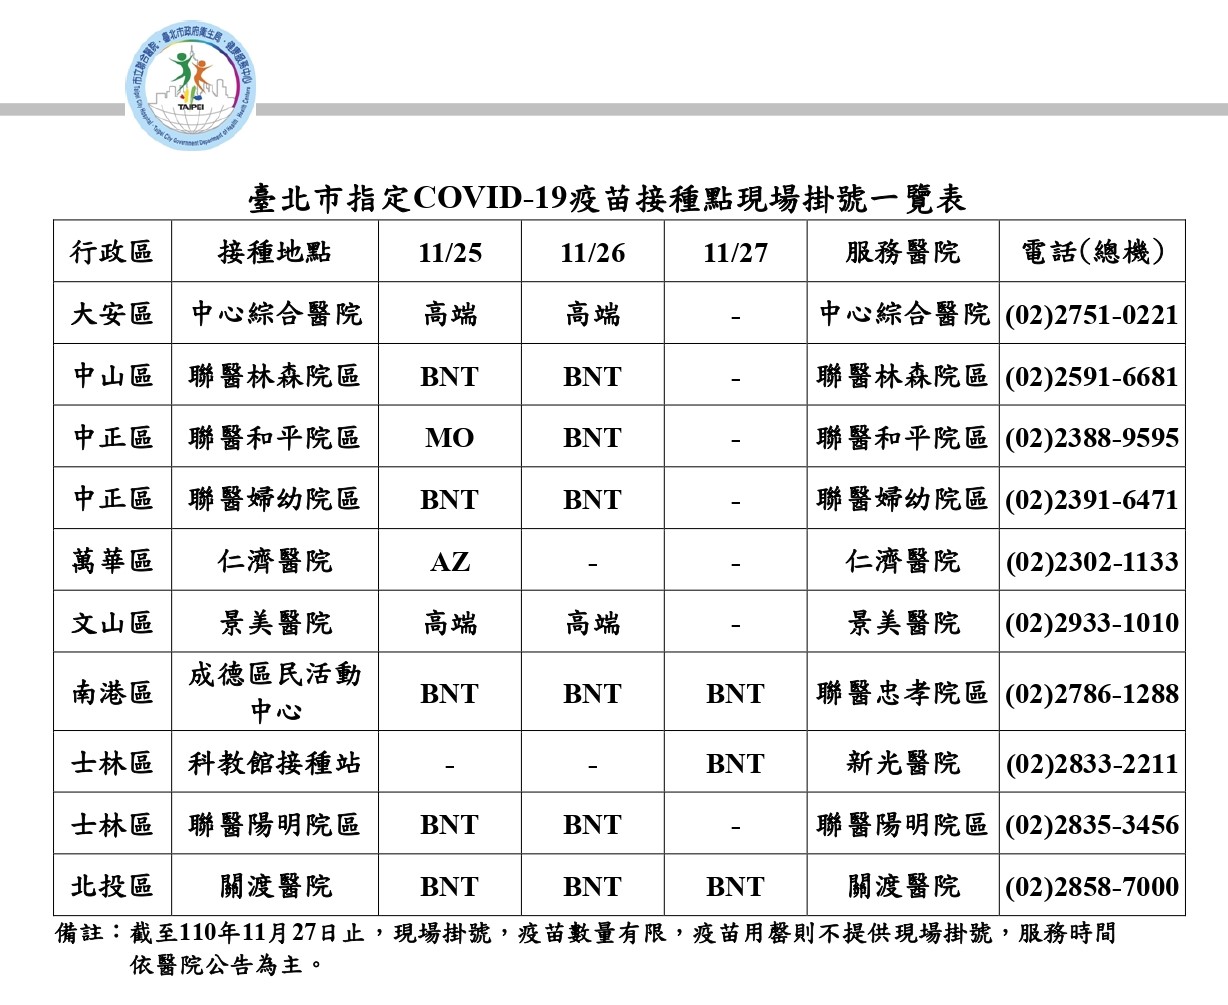 Cục Y tế chính quyền thành phố Đài Bắc đã phối hợp với 18 bệnh viện trên địa bàn thành phố để cung cấp dịch vụ đặt lịch hẹn tiêm chủng. (Nguồn ảnh: Chính quyền thành phố Đài Bắc)